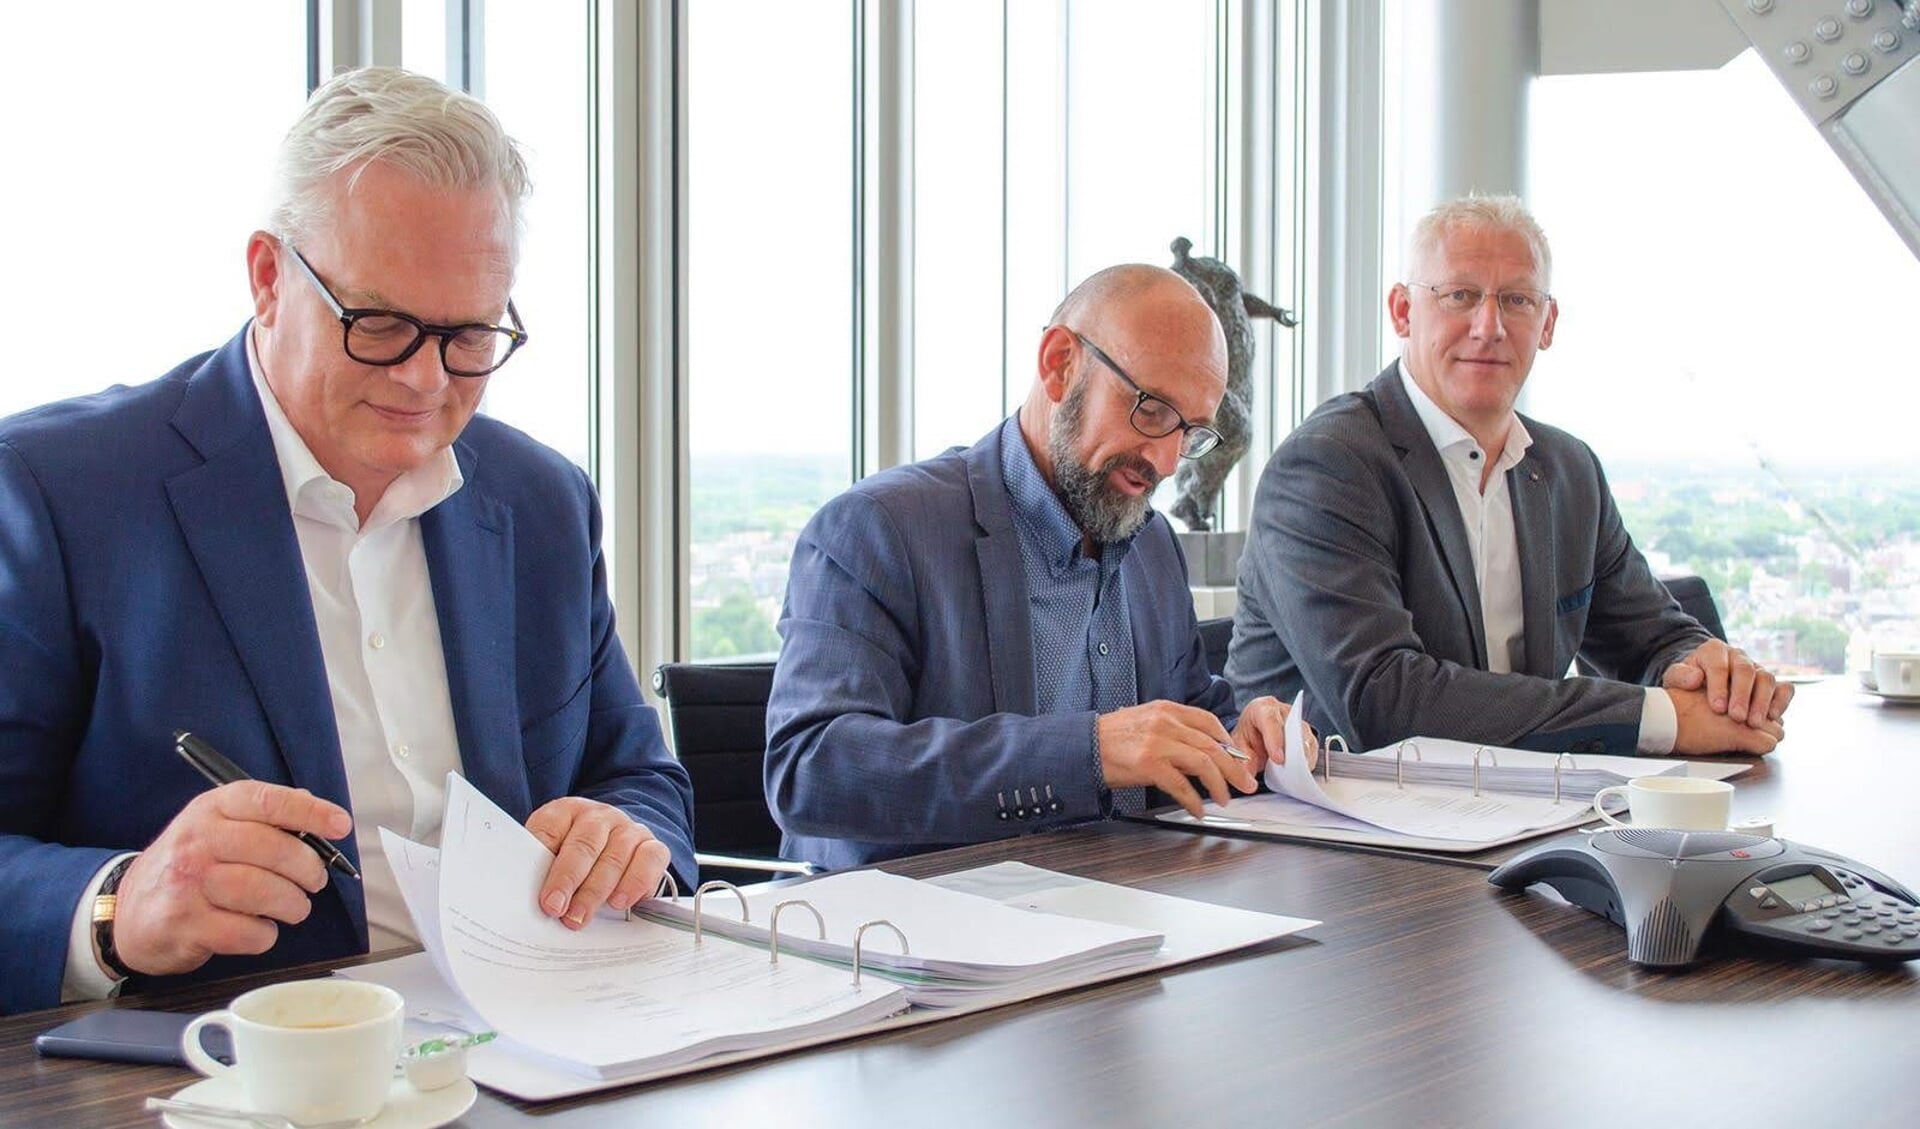 Op 5 juni 2019 tekenden Thomas Kwaks, CEO van HYDAC B.V., en de voormalig eigenaren van Elma B.V., Dick Varel en Teunis van Vulpen, voor de aandelenovername van Elma B.V. in Soesterberg.